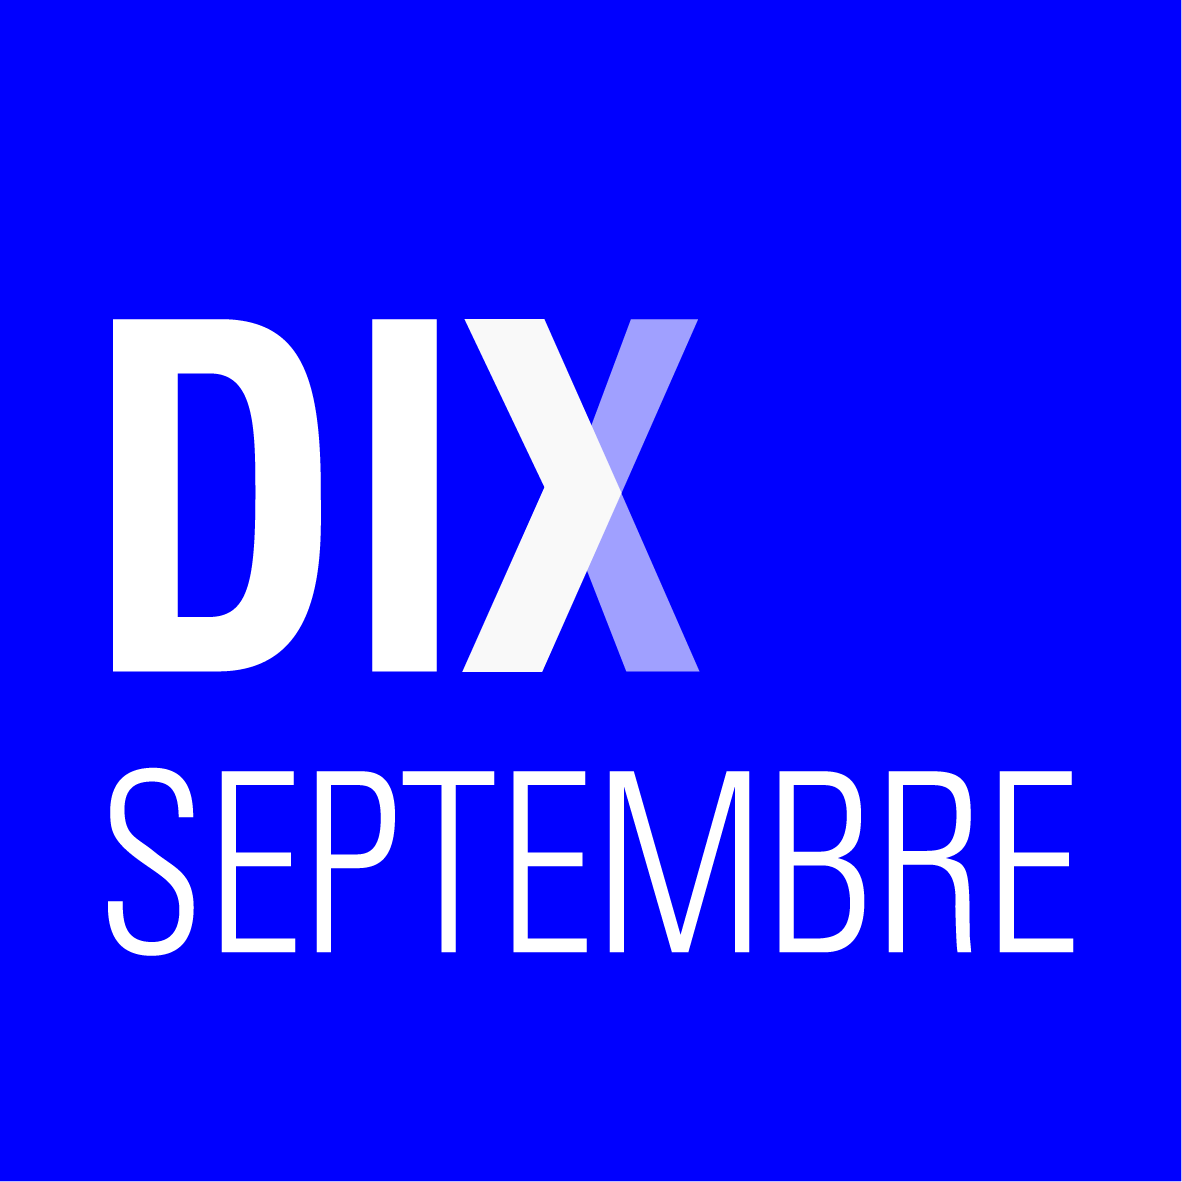 Dix Septembre